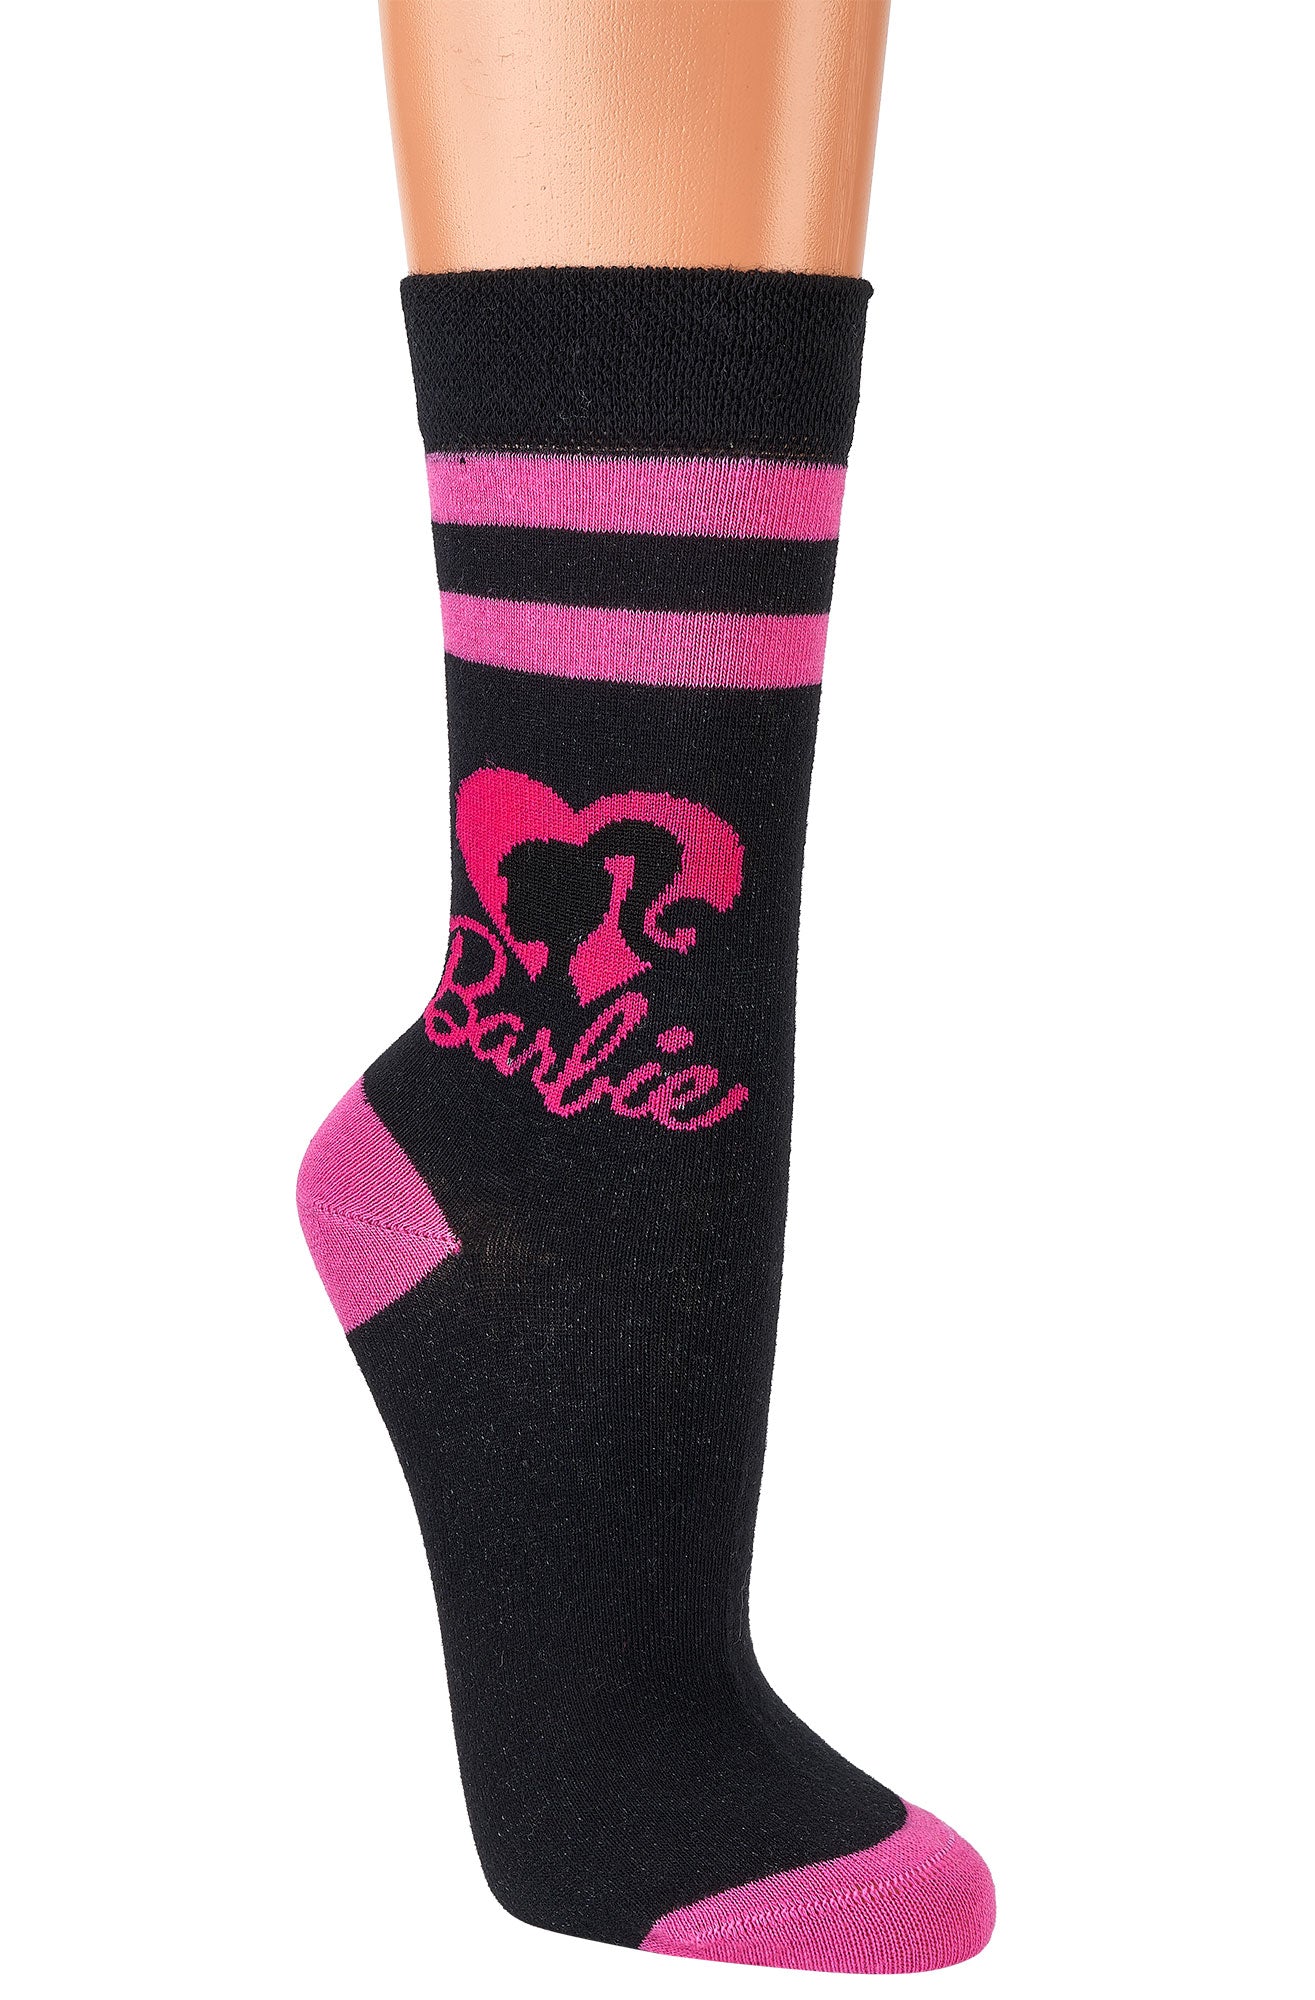 Barbie® angesagte Socken für Mädchen und Damen im typischen Barbiestyle